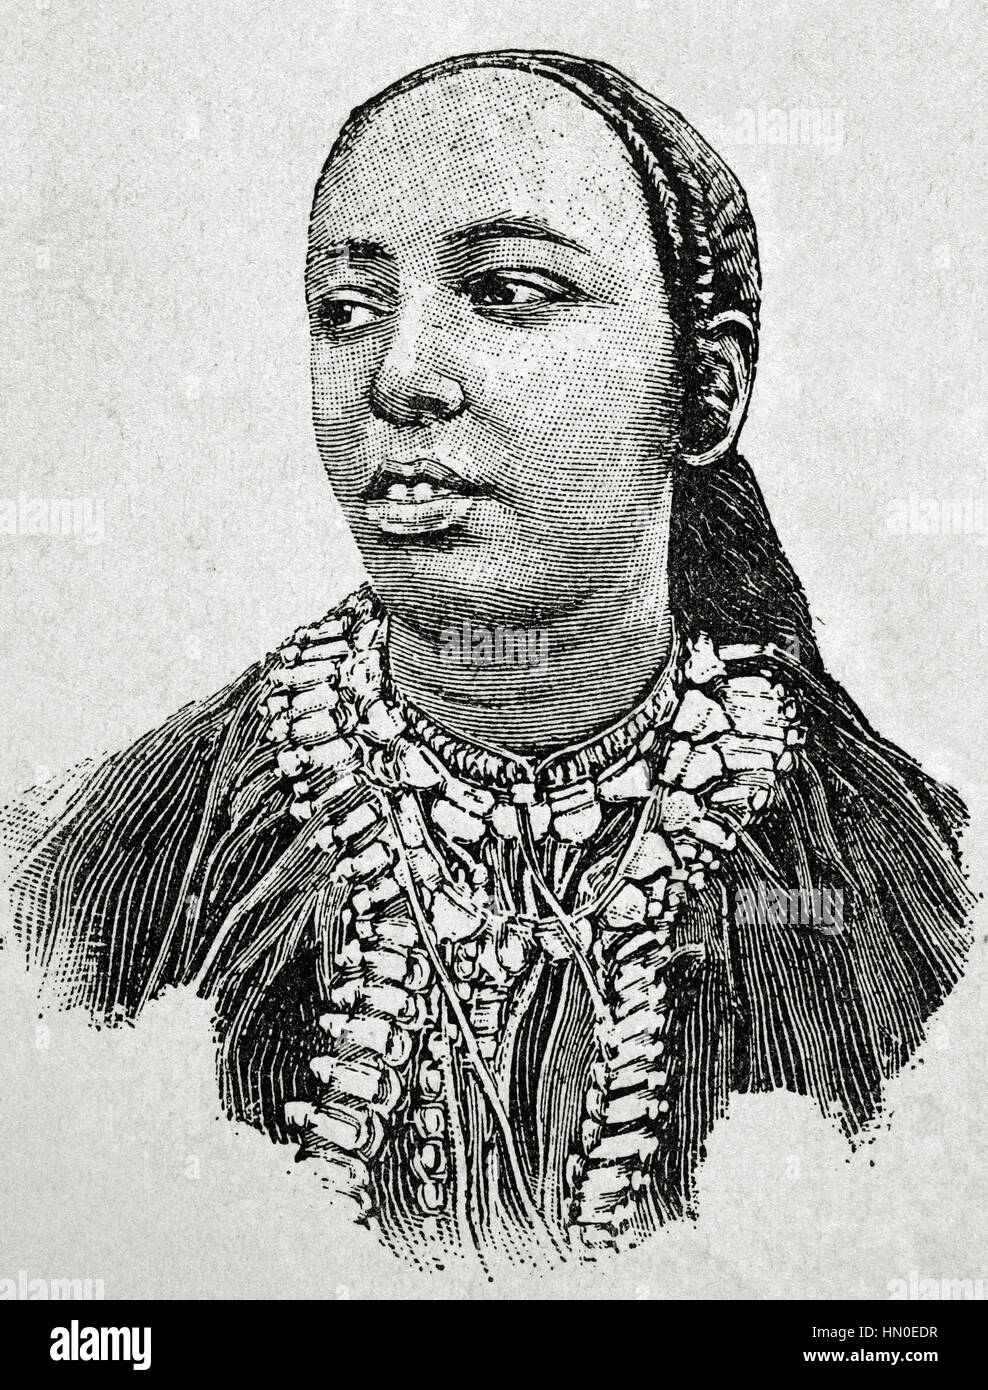 Taytu Betul (1851-1918). Imperatrice consorte dell'Impero etiopico (1889-1913) e la terza moglie dell'imperatore Menelik II d'Etiopia. Ritratto. Incisione. 'La Ilustracion artistica", 1896. Foto Stock